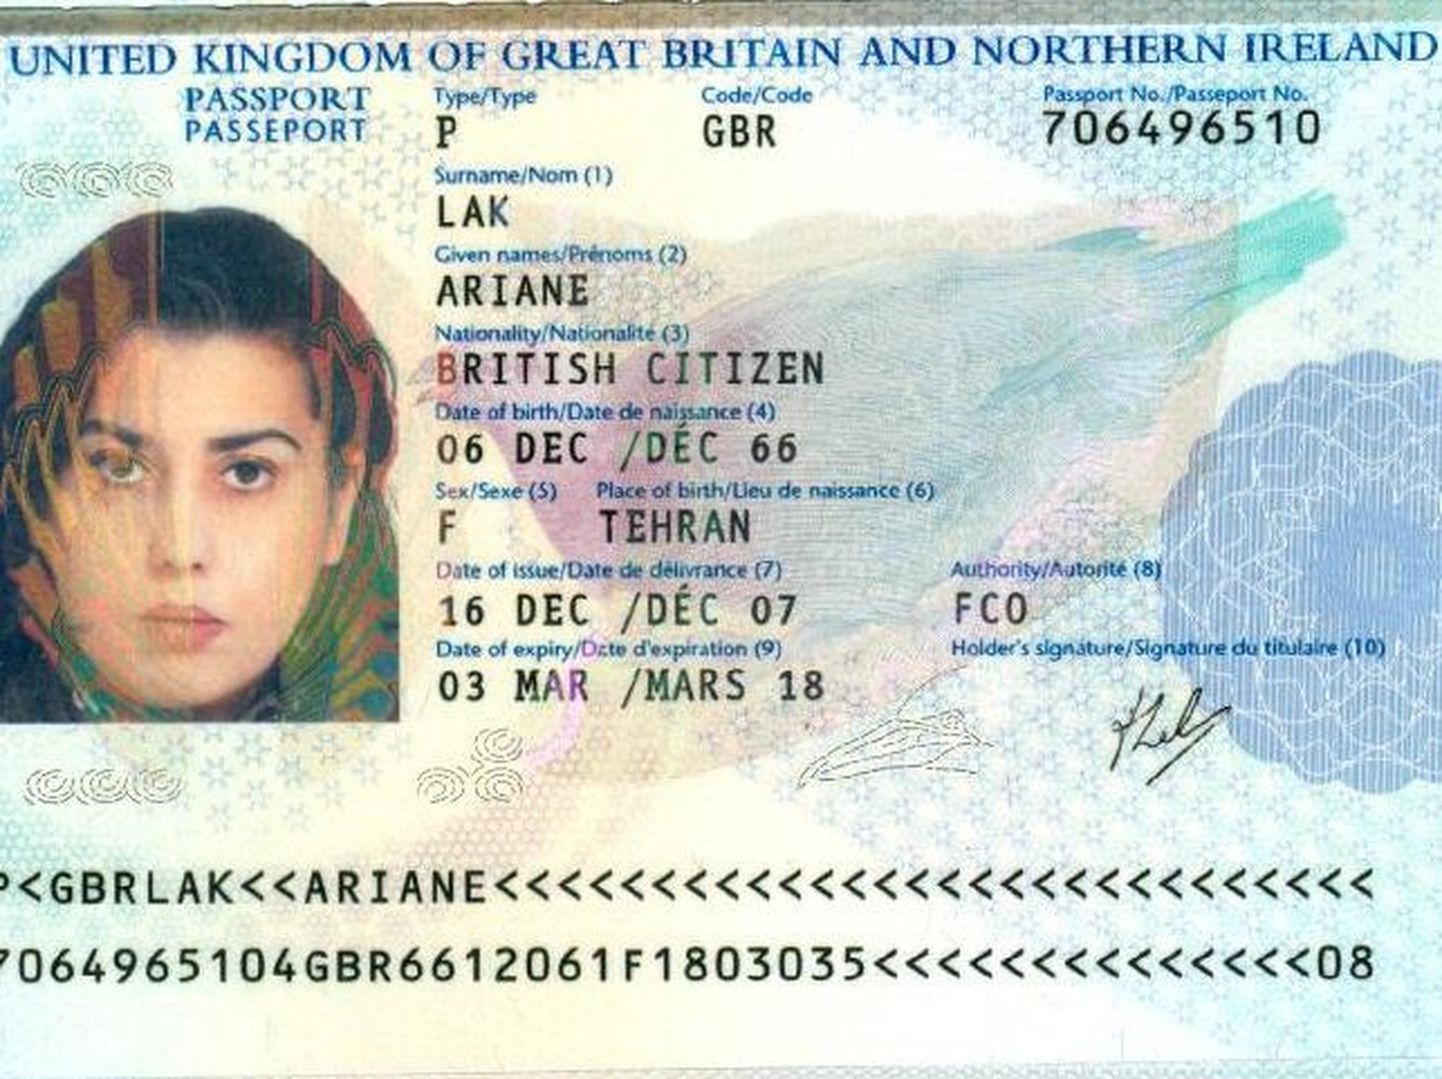 Ariane Laki pass